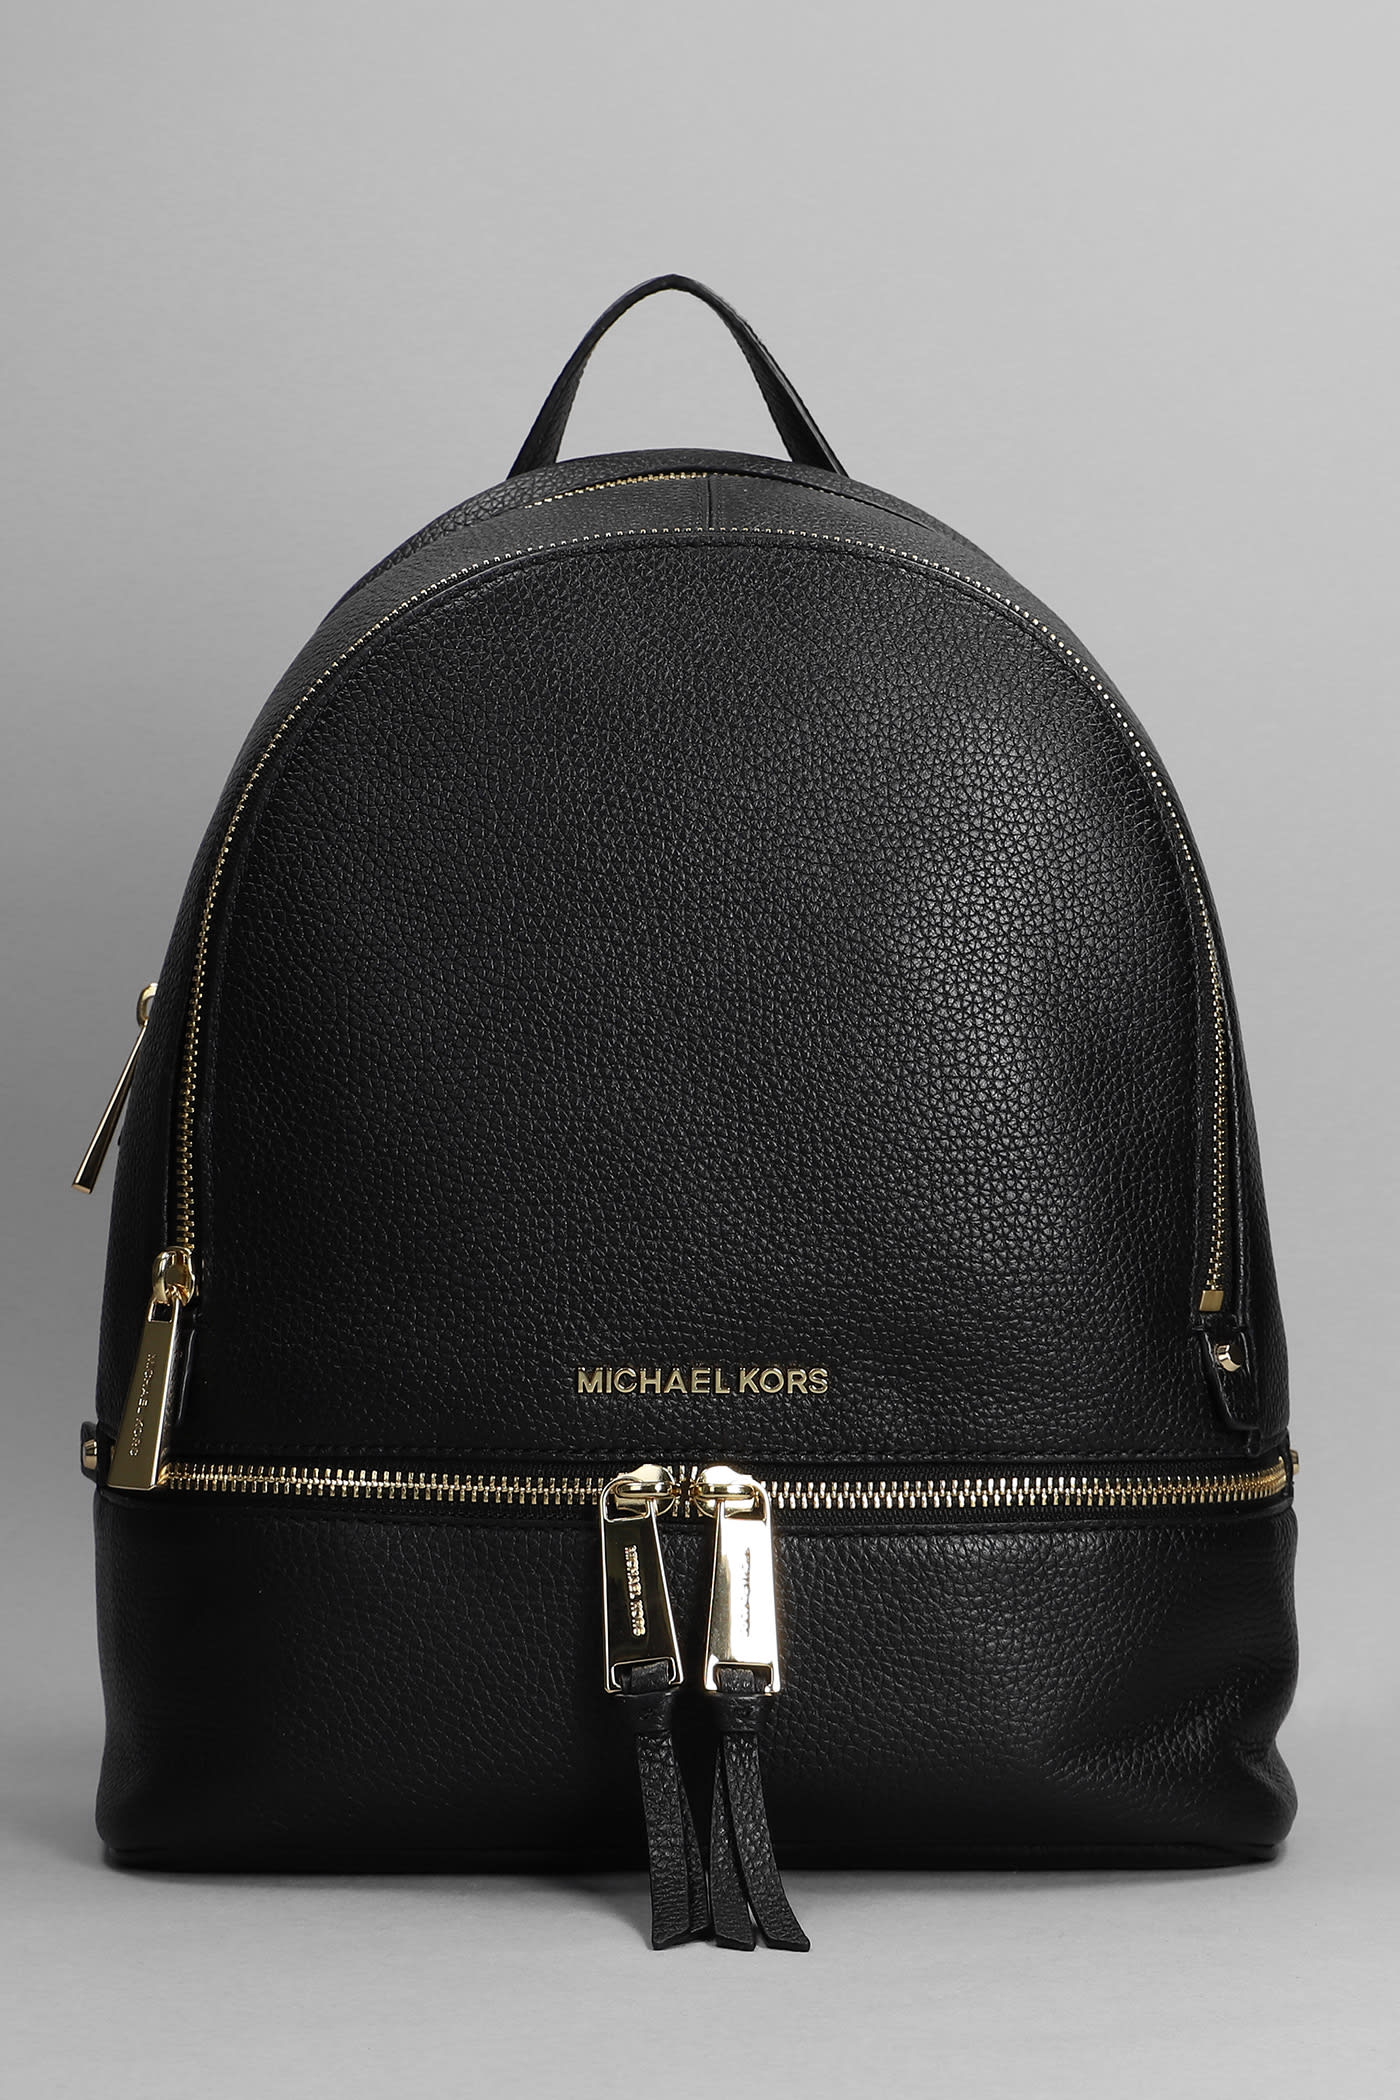 Michael Kors Rhea Backpack In Black Leather